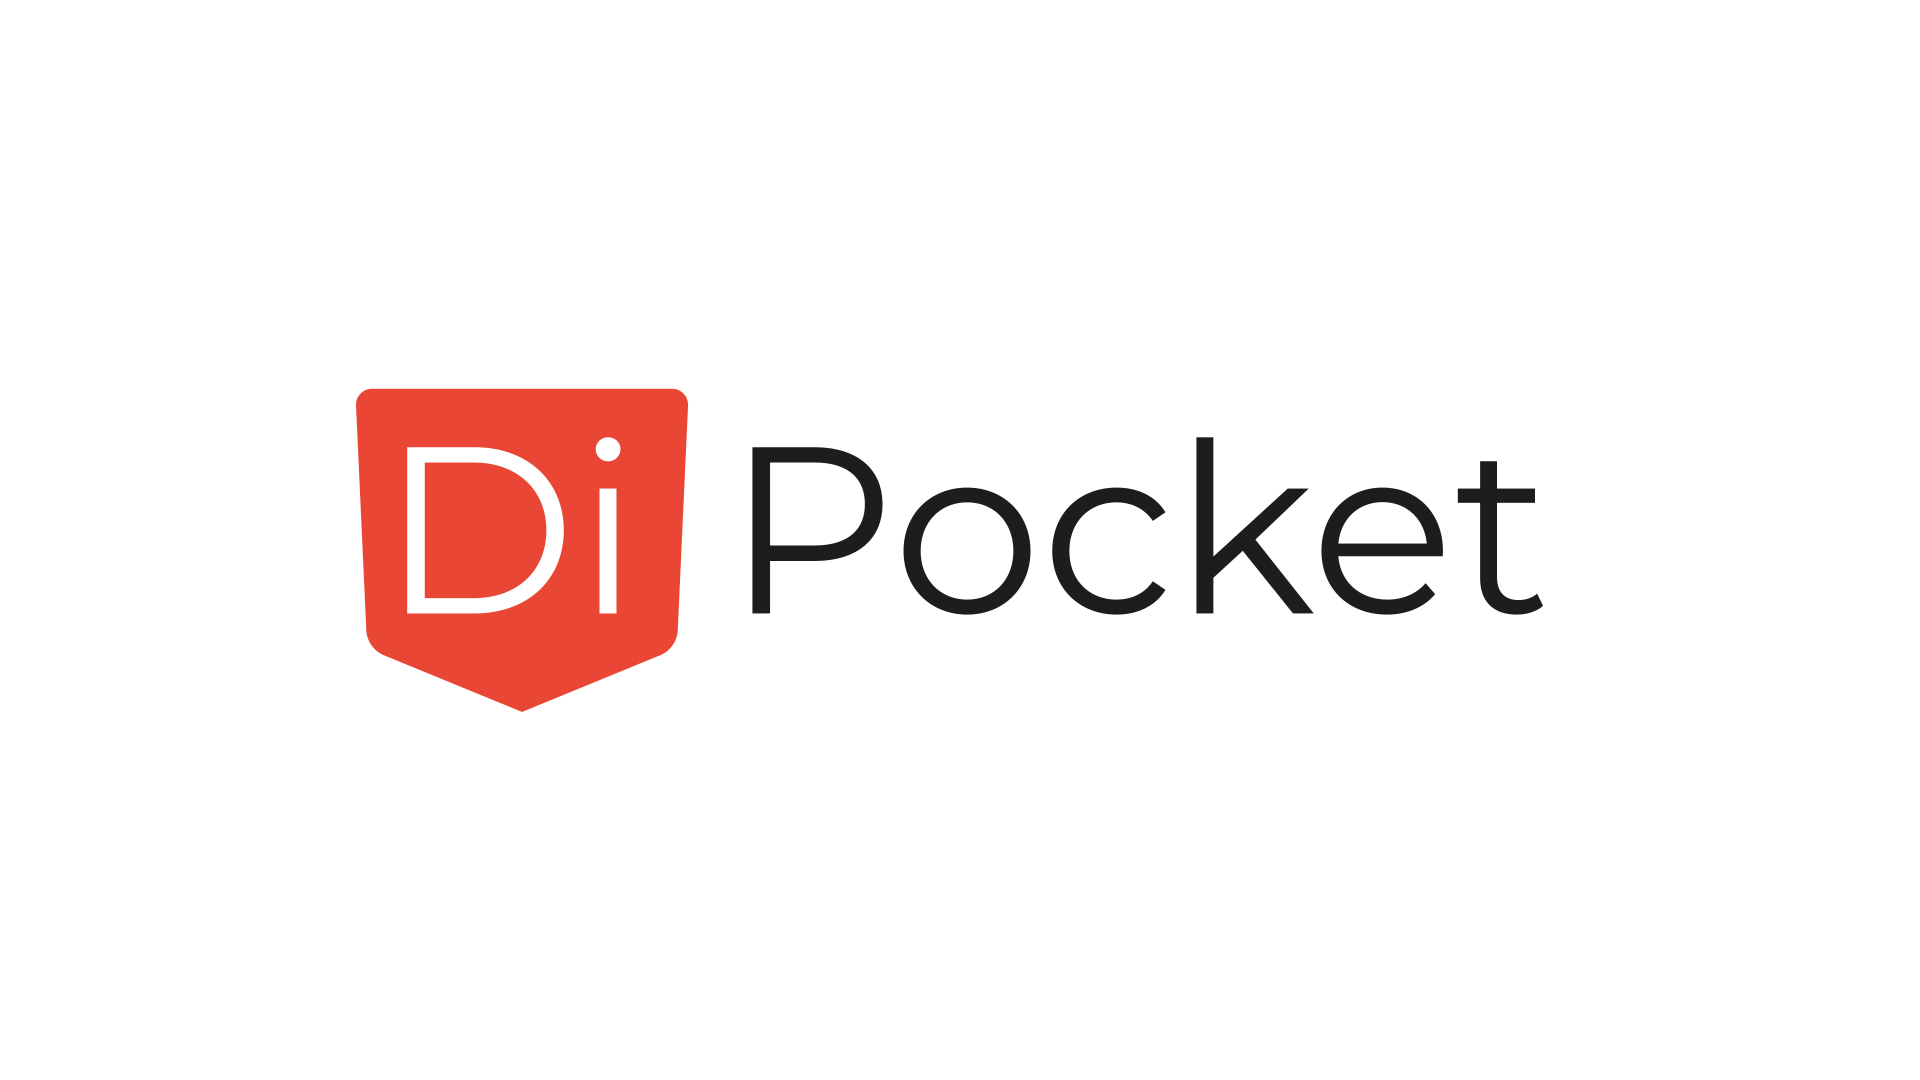 Di Pocket Website